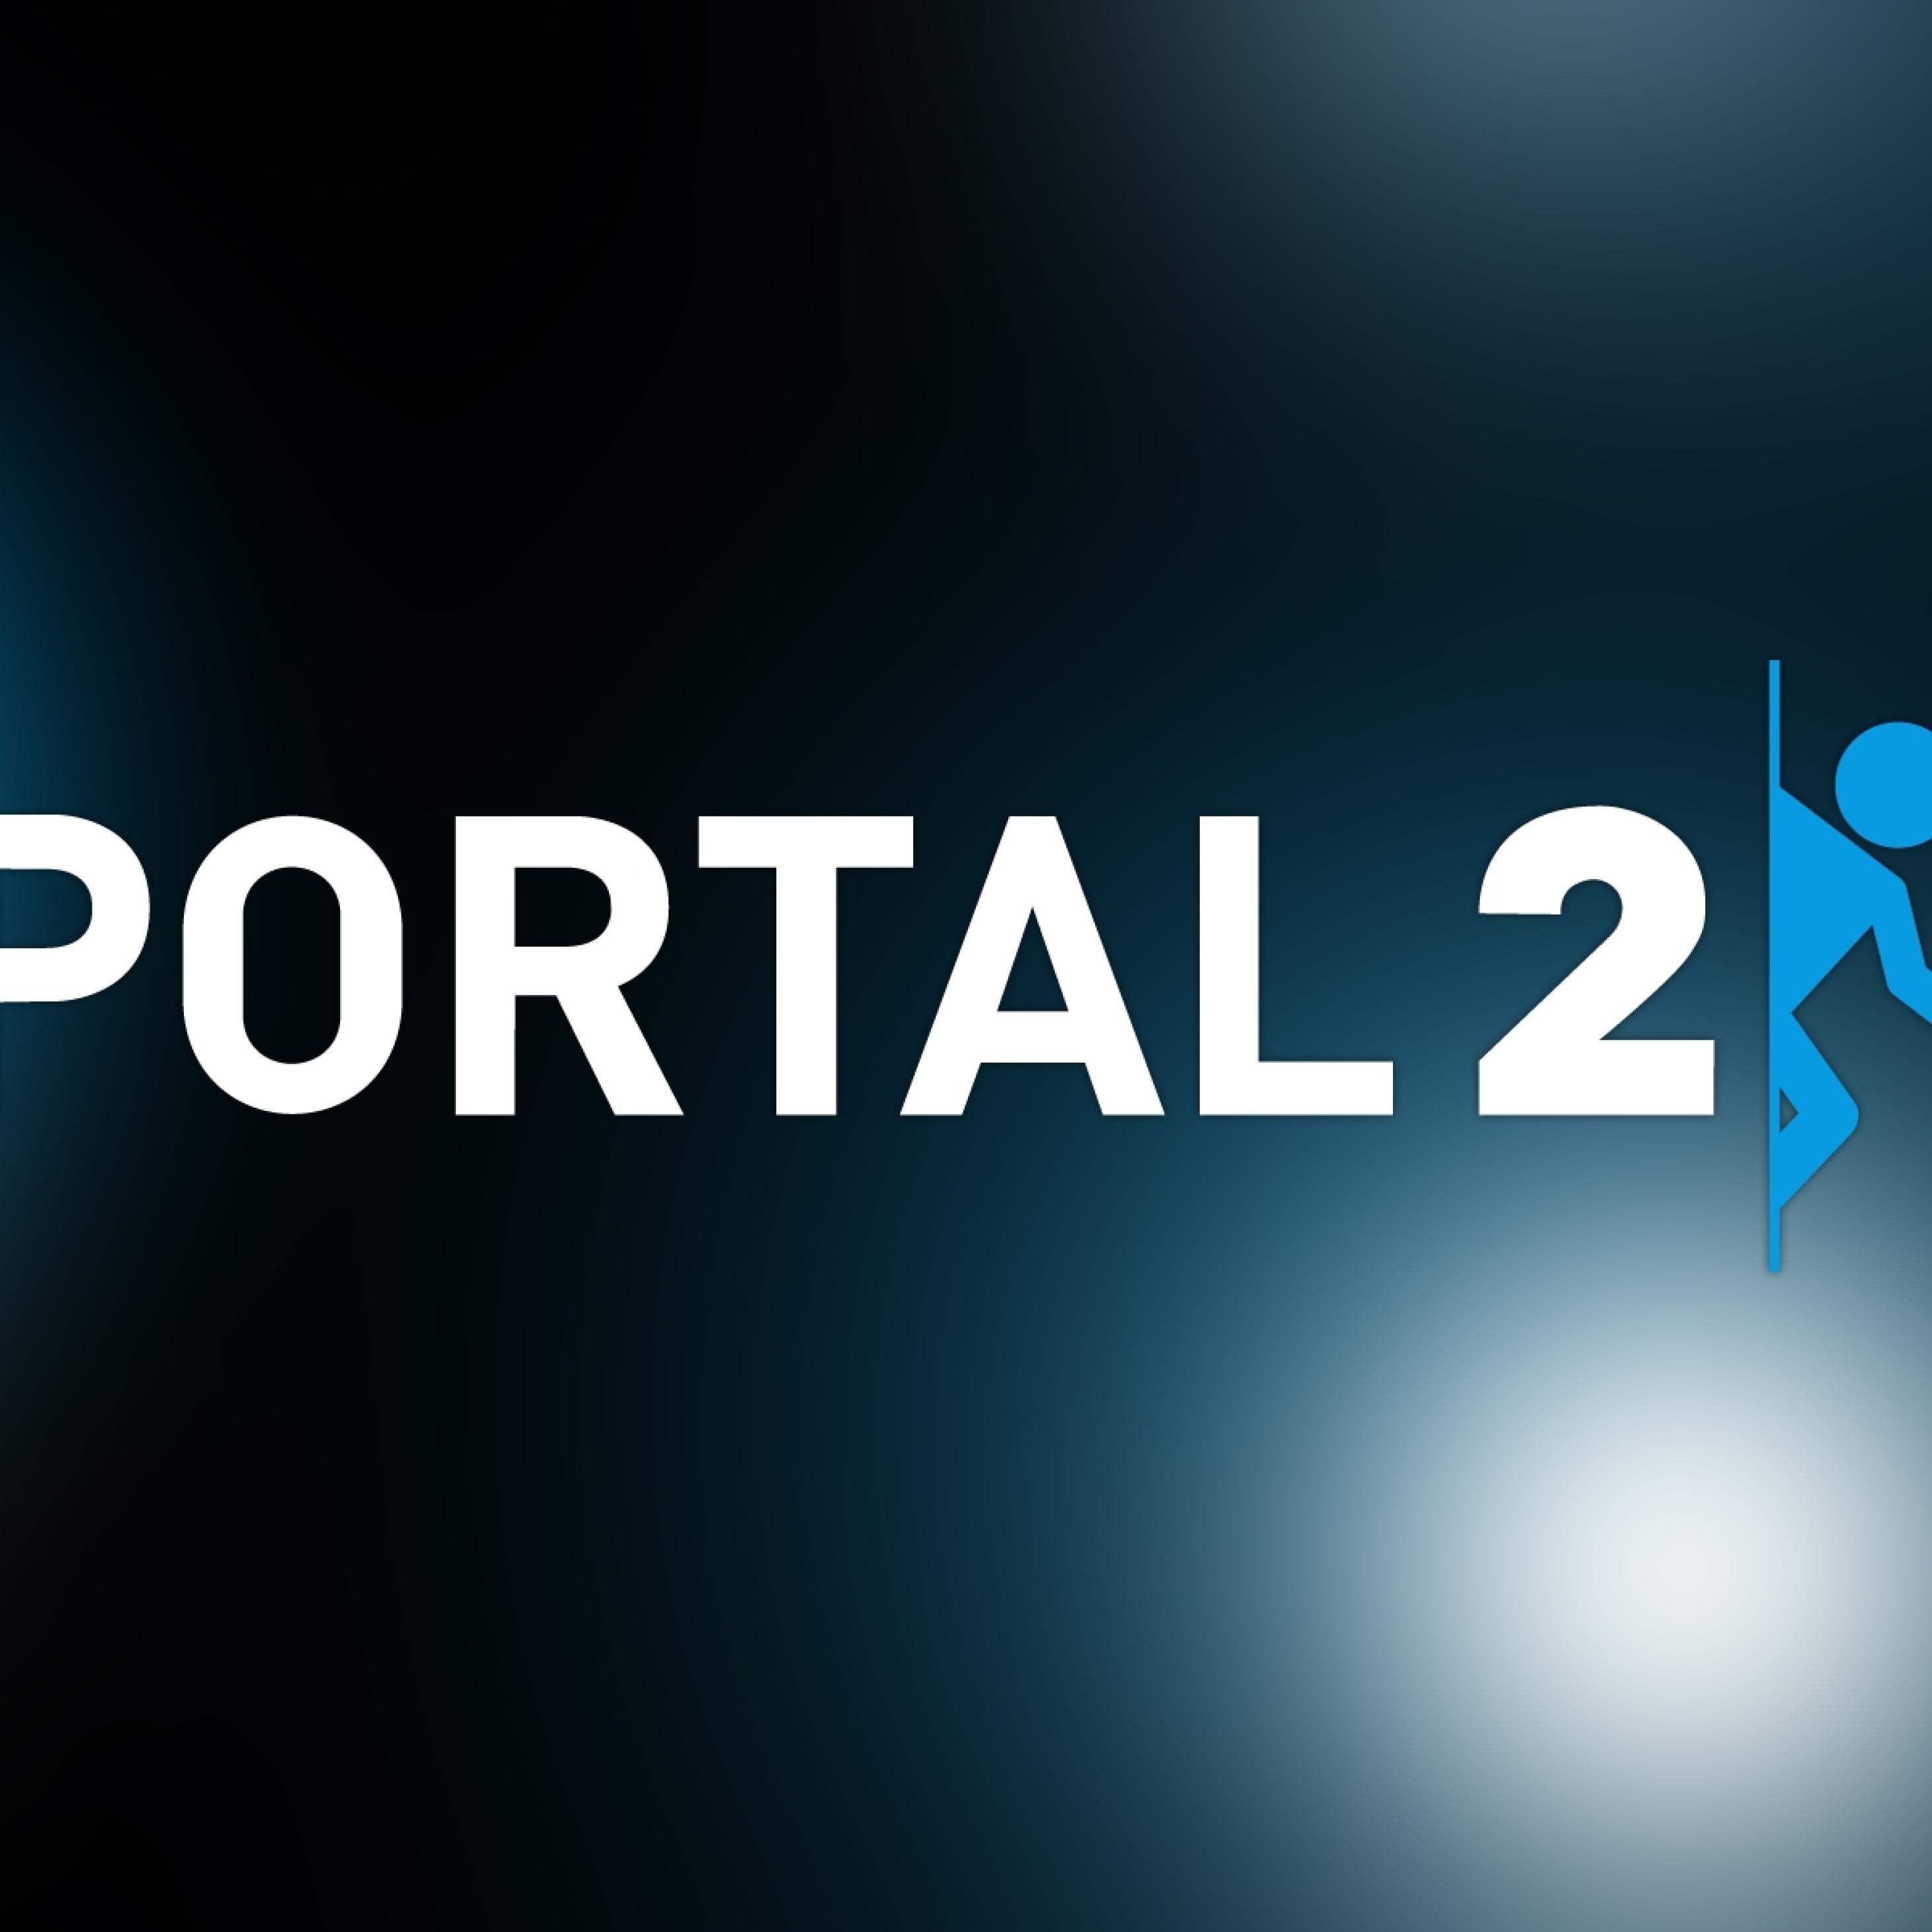 Сайт про портал. Портал. Портал картинки. Портал конец. Portal 2 logo.